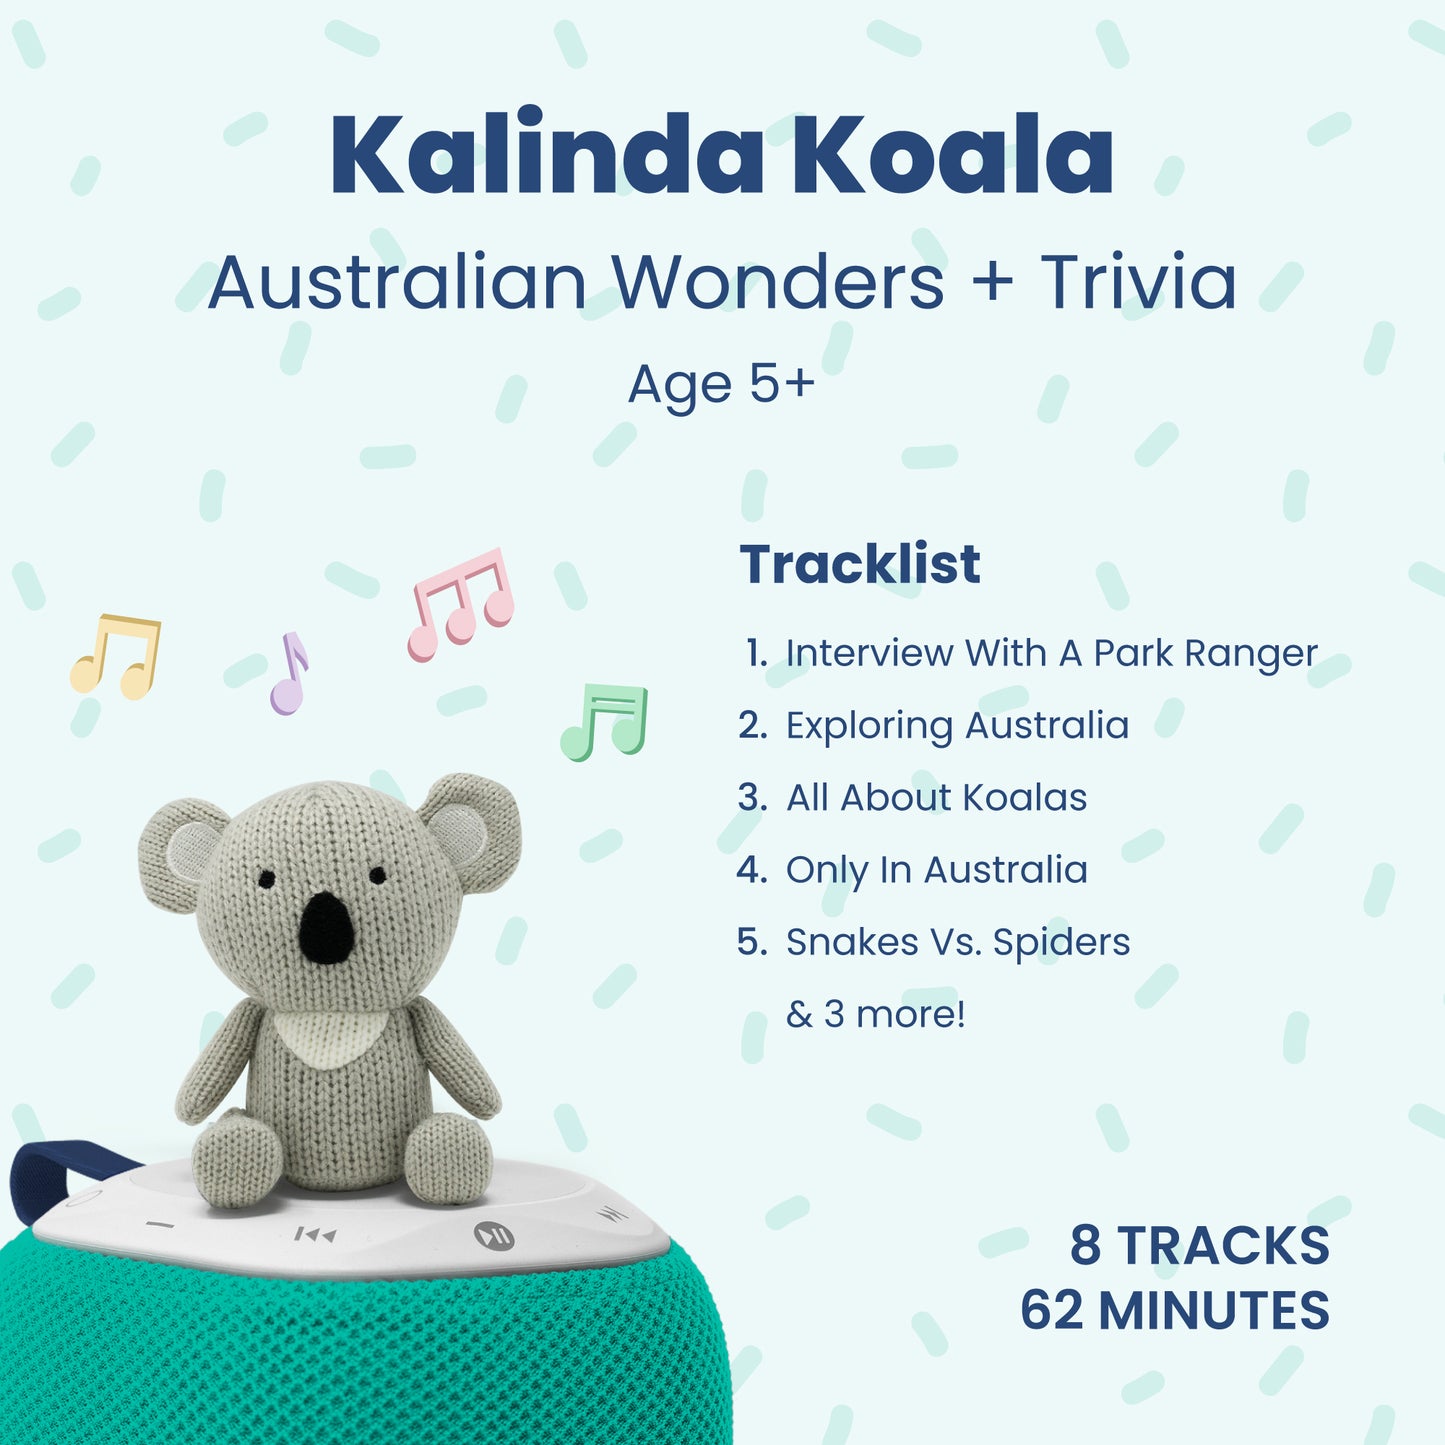 Kalinda Koala